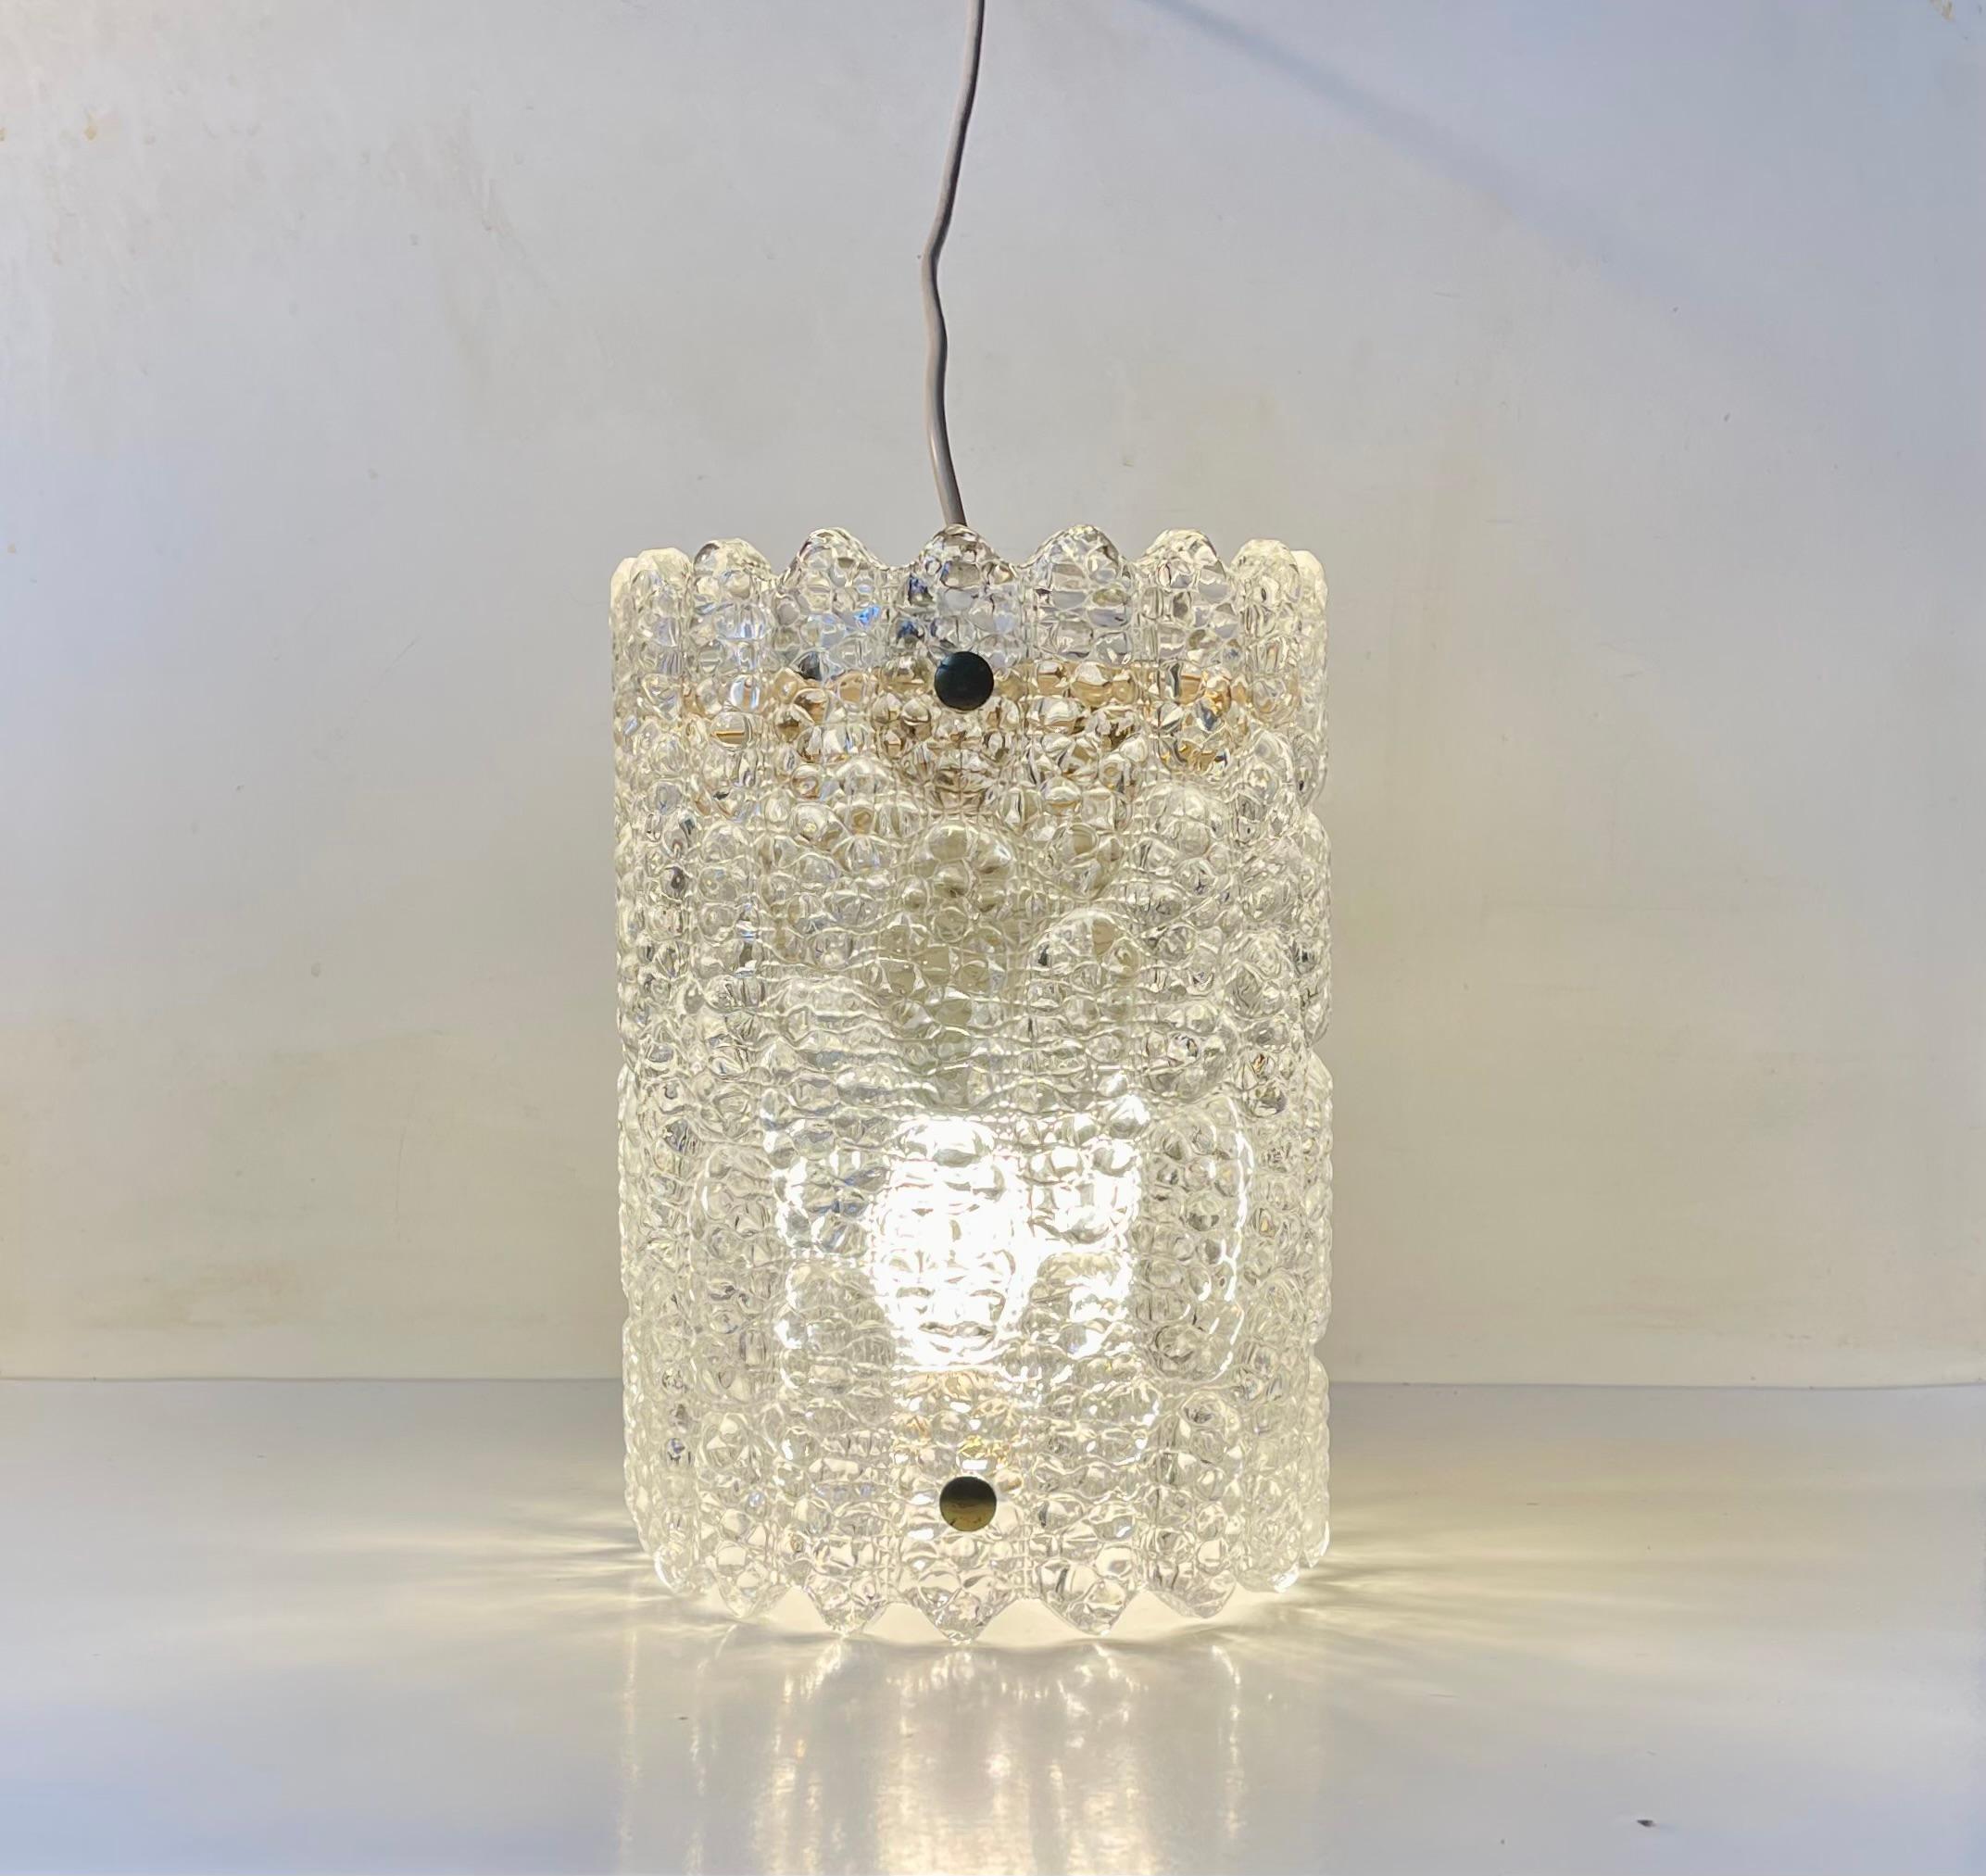 Zylindrische Hängeleuchte aus Kristall und Messing, entworfen von Carl Fagerlund und hergestellt von Orrefors in Schweden in den frühen 1960er Jahren. Die originale, abnehmbare Messingplatte auf der Oberseite ist noch vorhanden. Je nach gewünschtem